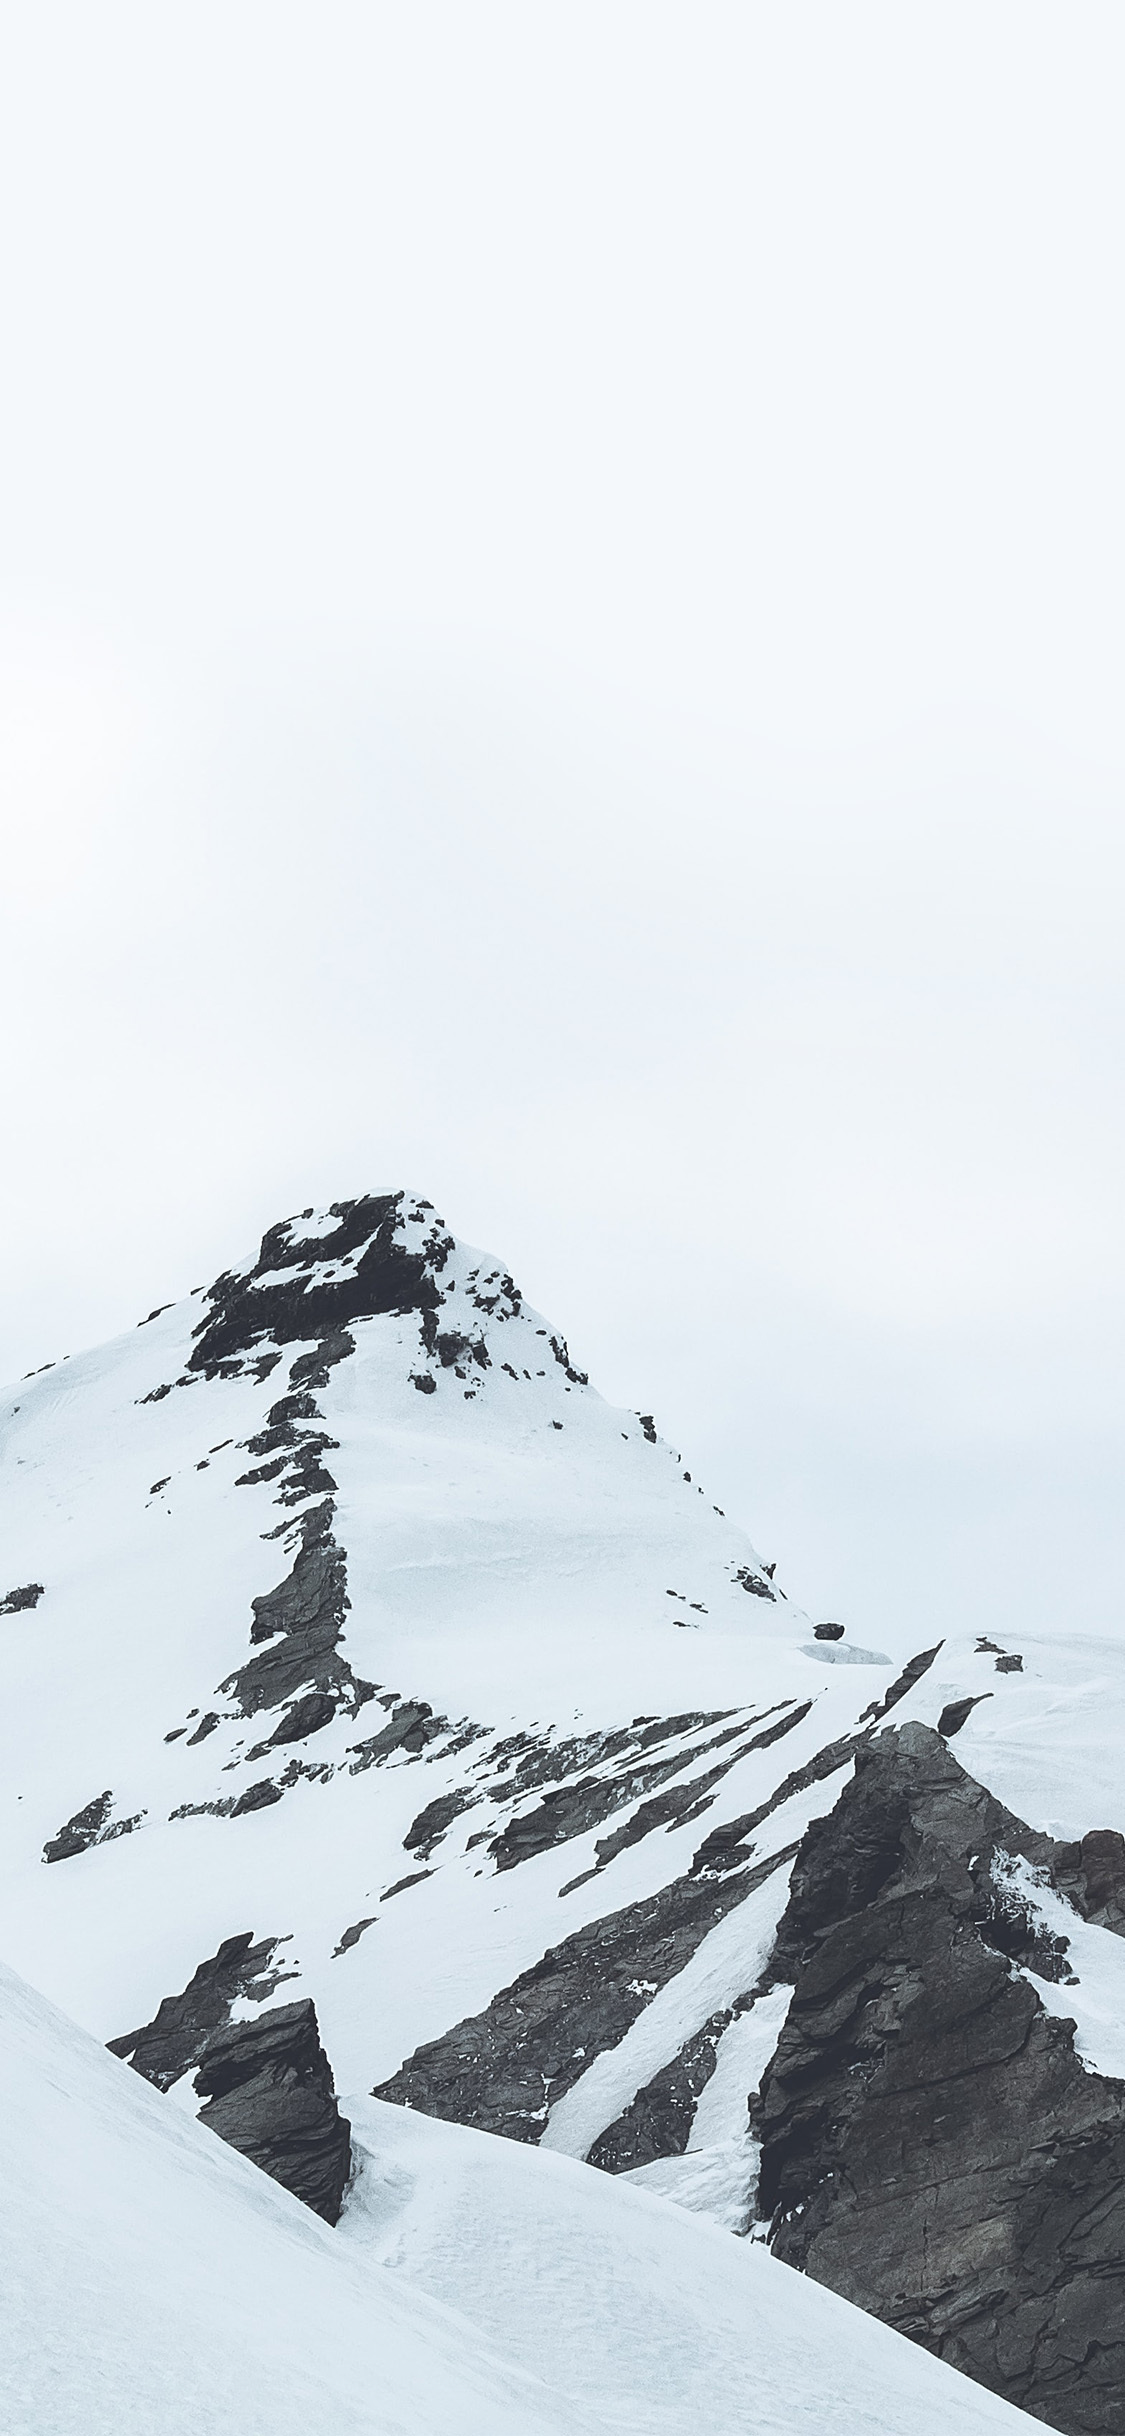 雪山壮丽风景手机壁纸